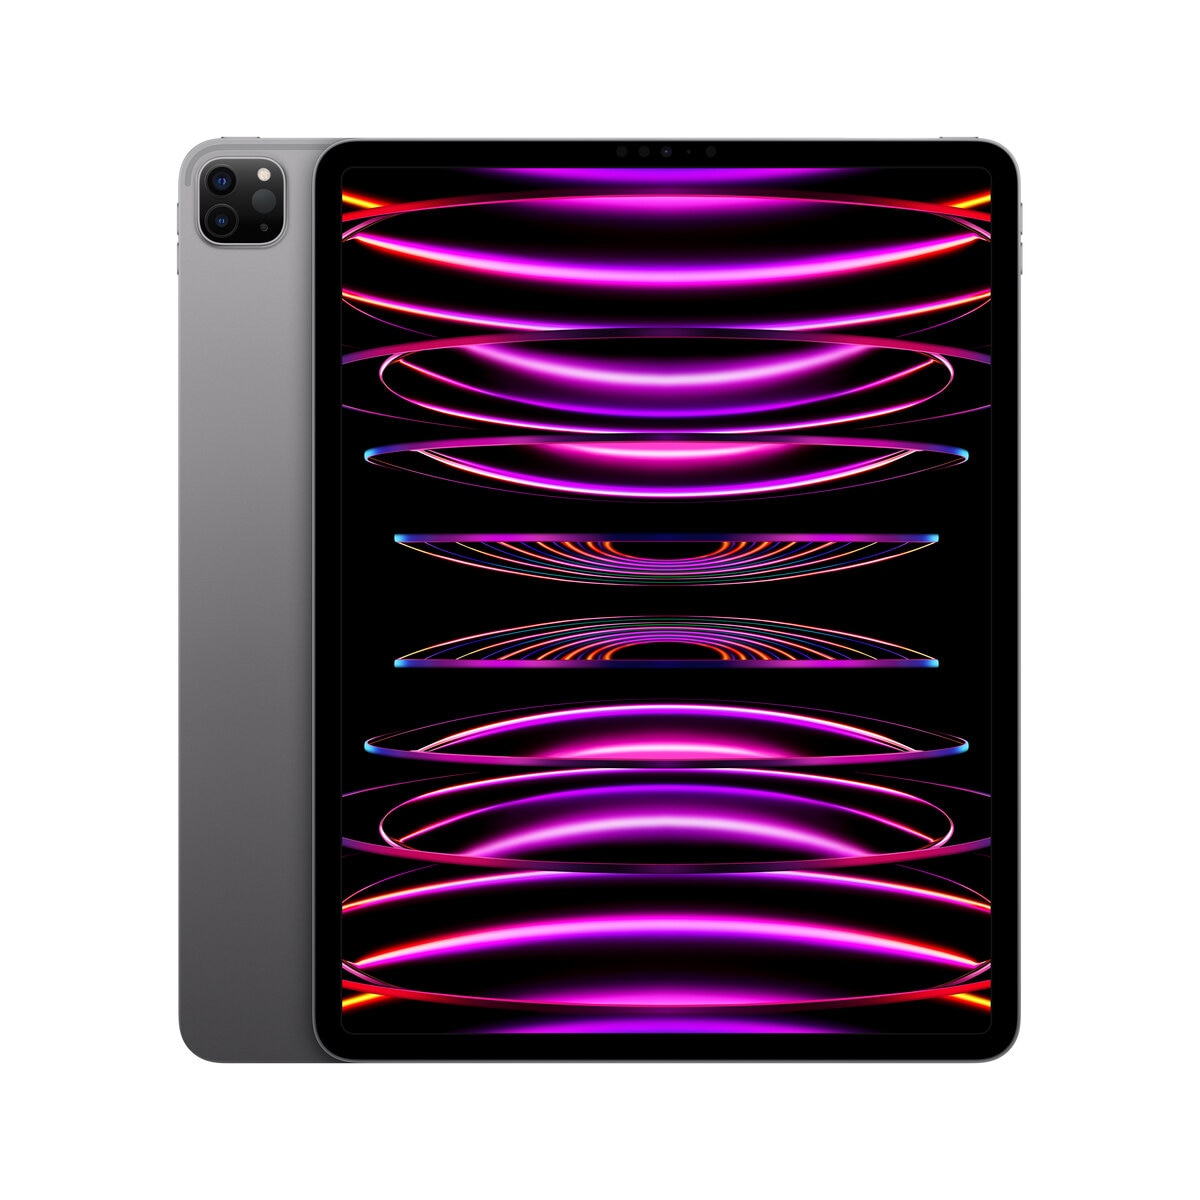 セット品【傷なし美品】iPad Pro 12.9インチ 第5世代 Wi-Fi